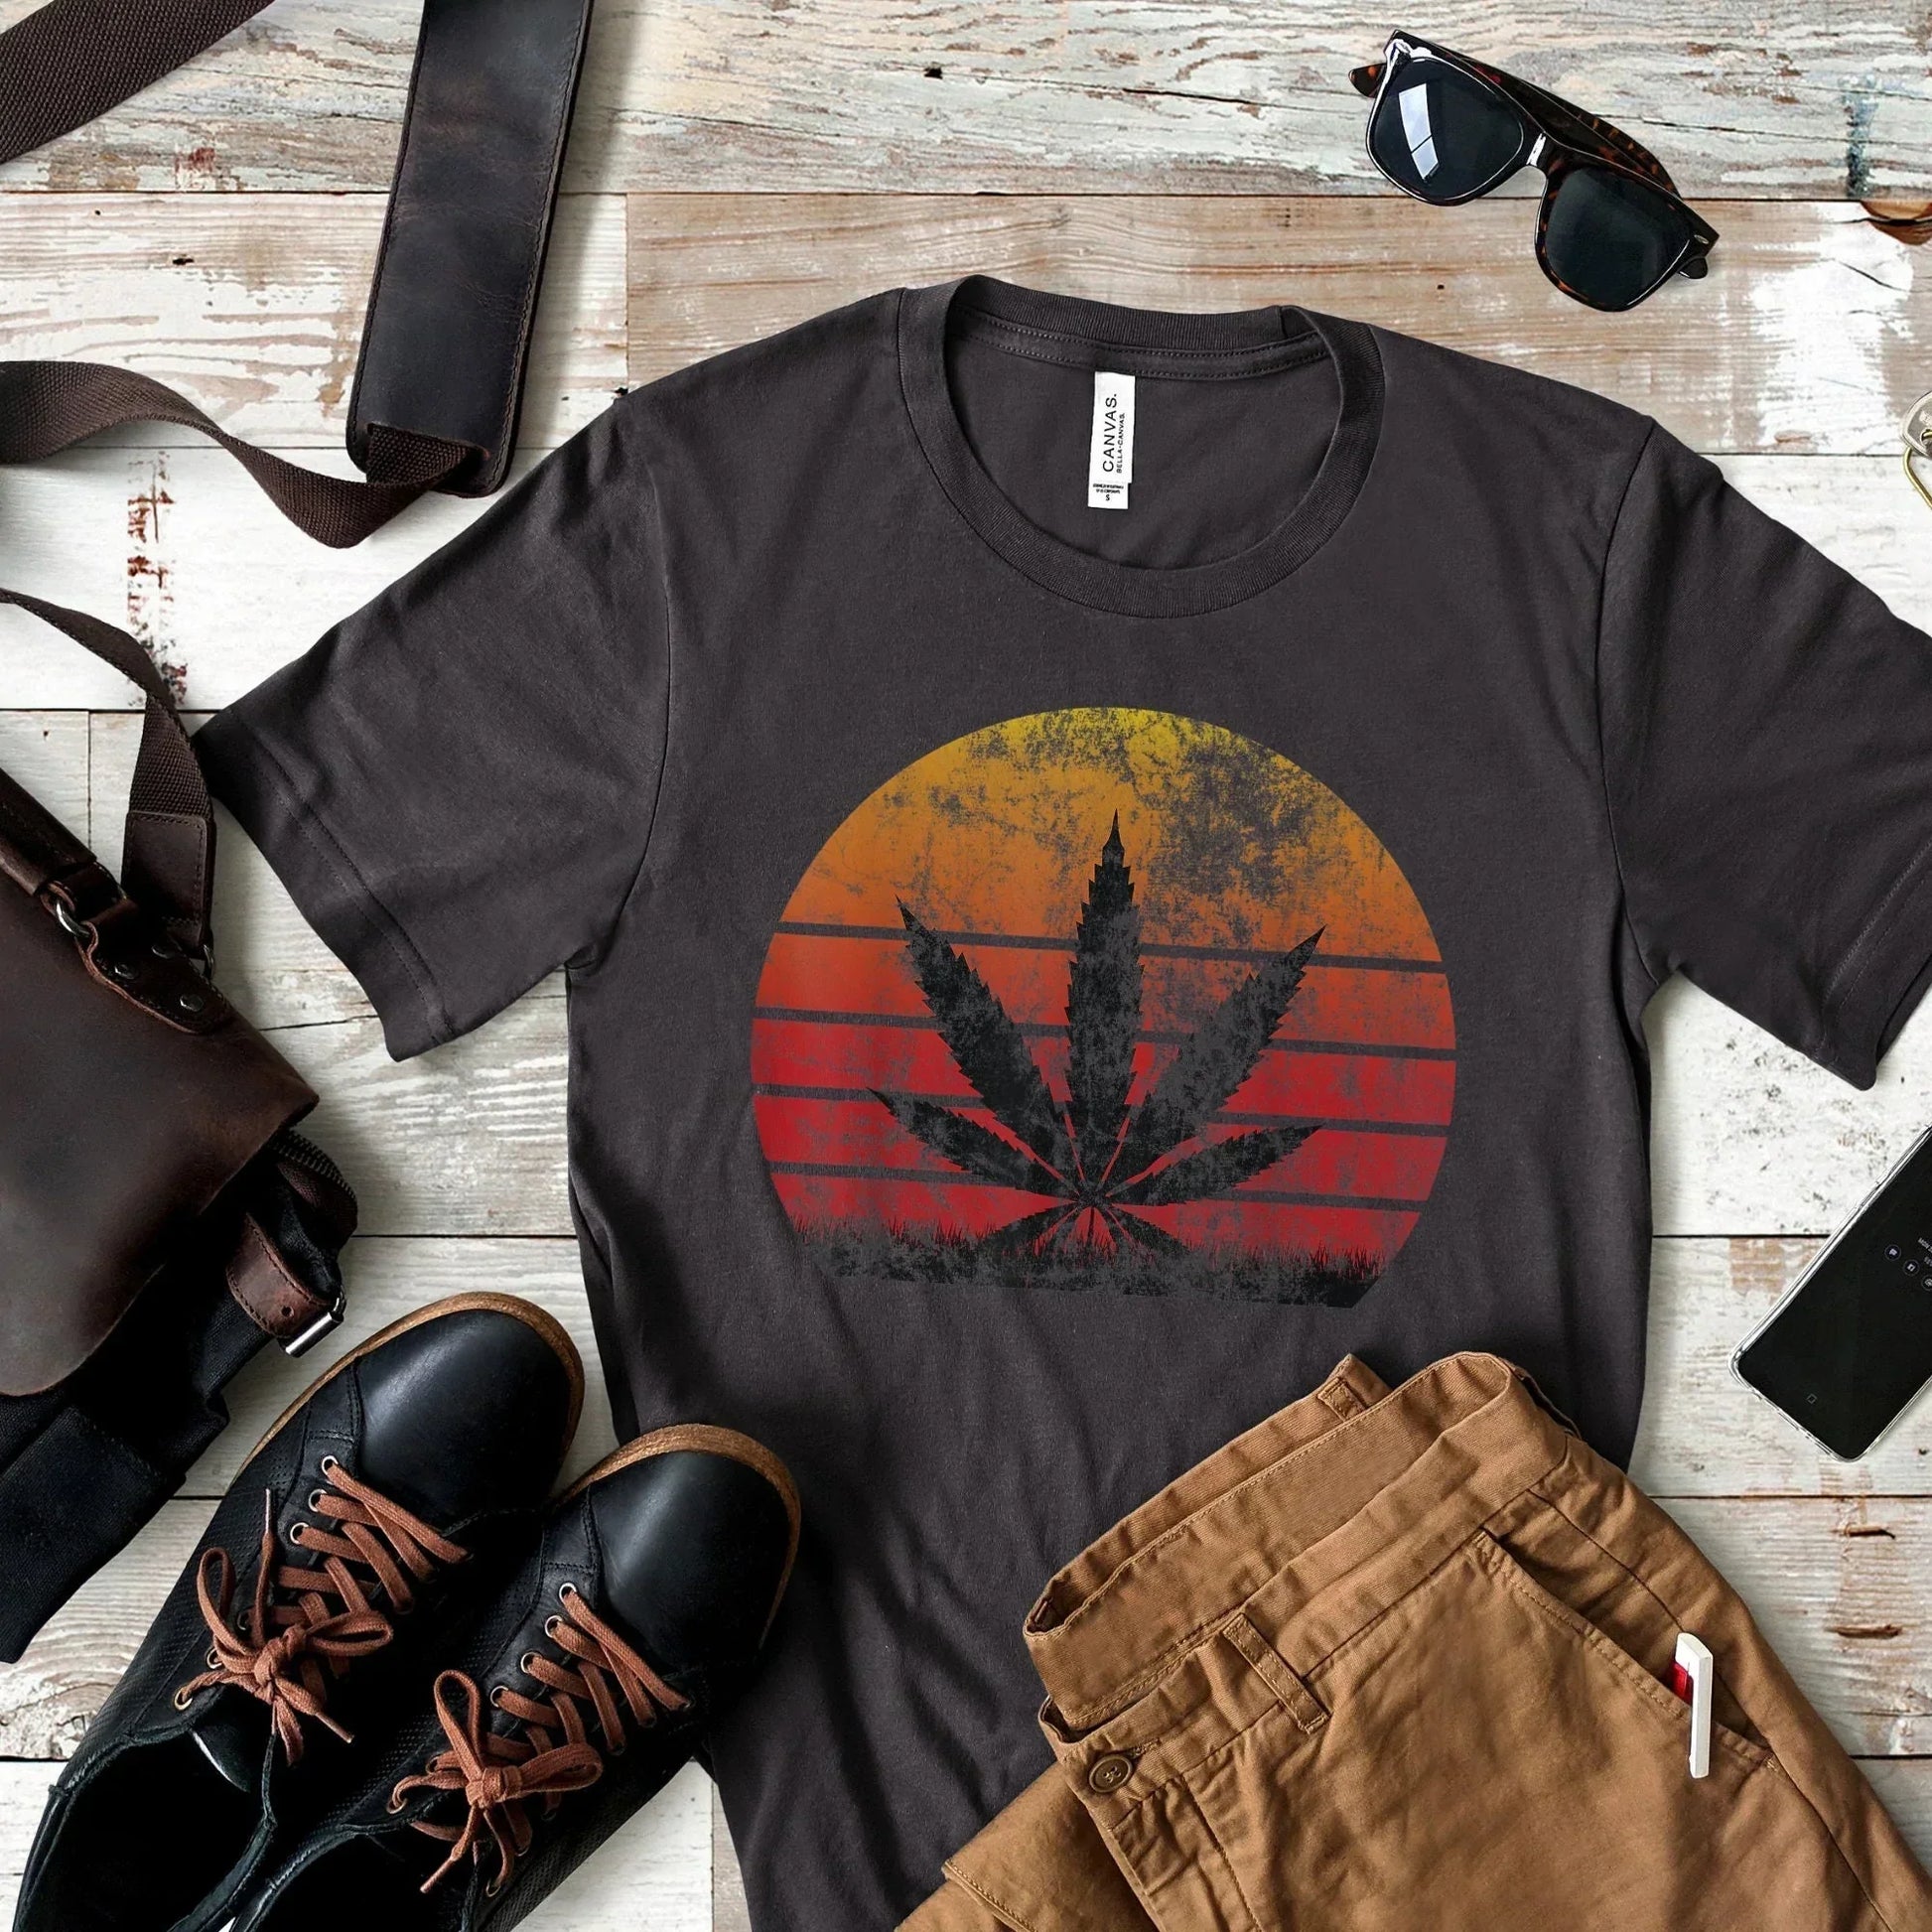 Stoner Gifts, Vintage Stoner Shirt, Retro Cannabis Hoodie, Stoner Gift for Her, Weed TShirt, Stoner Gift for Him, Marijuana sweatshirt